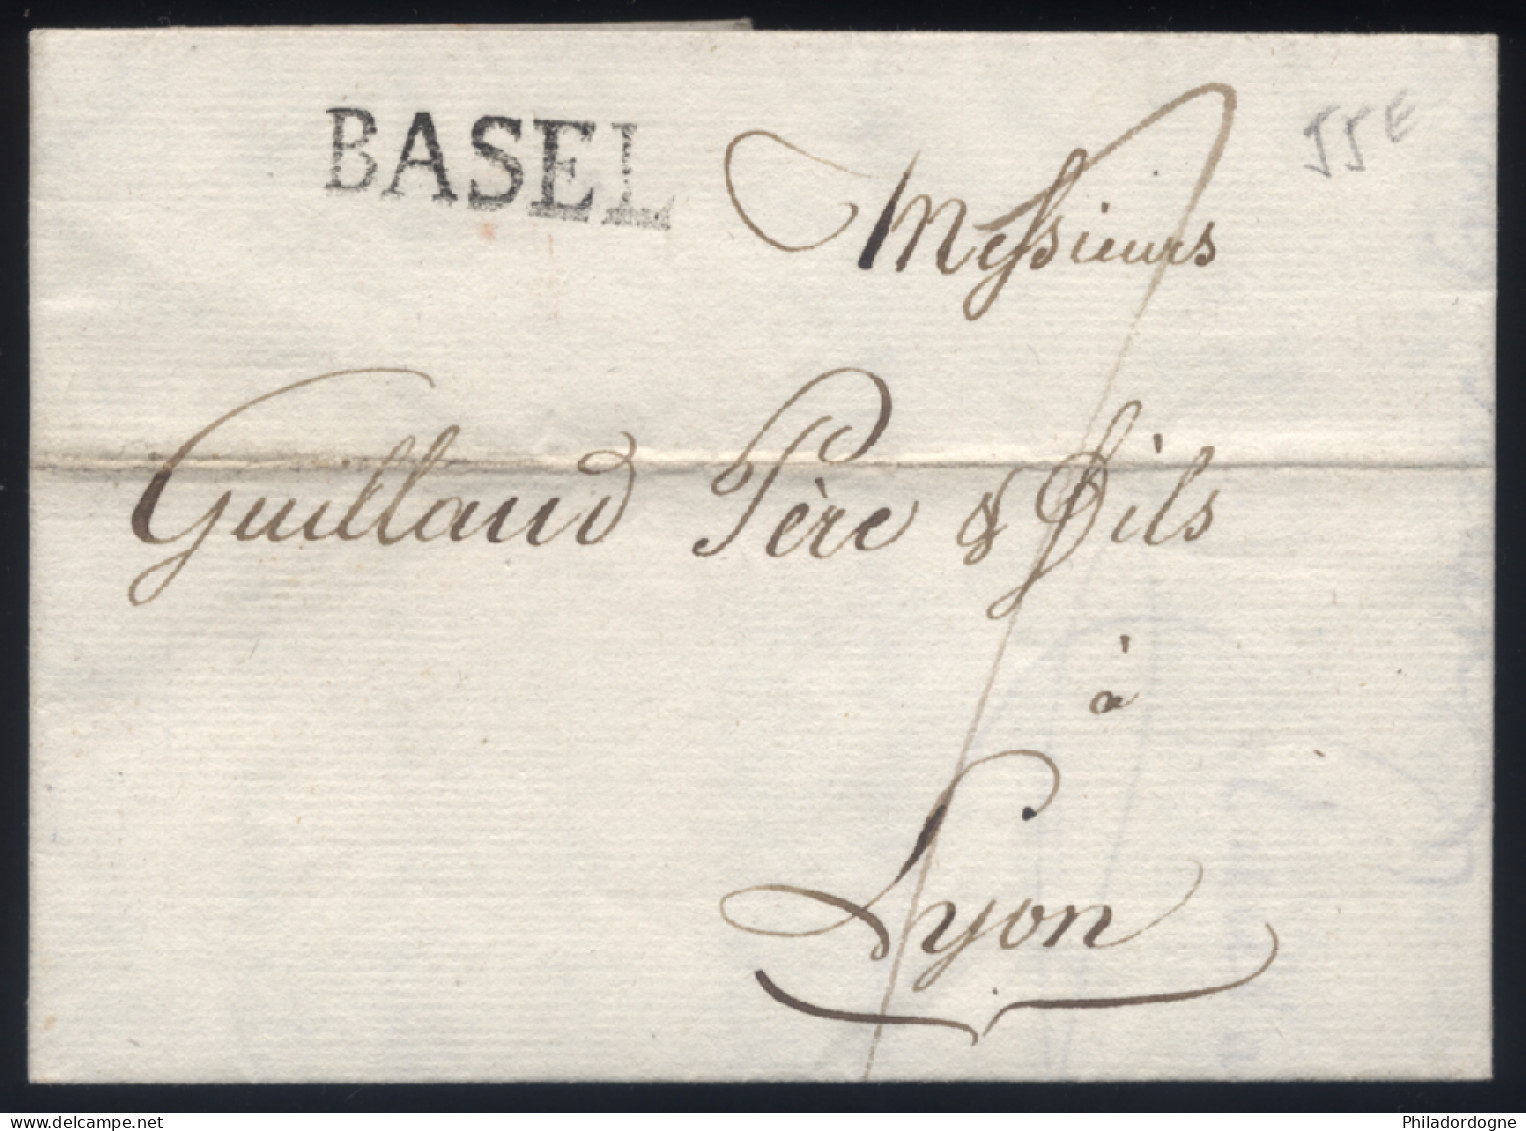 LaC Griffe Basel Pour Lyon - 08/1806 - ...-1845 Préphilatélie